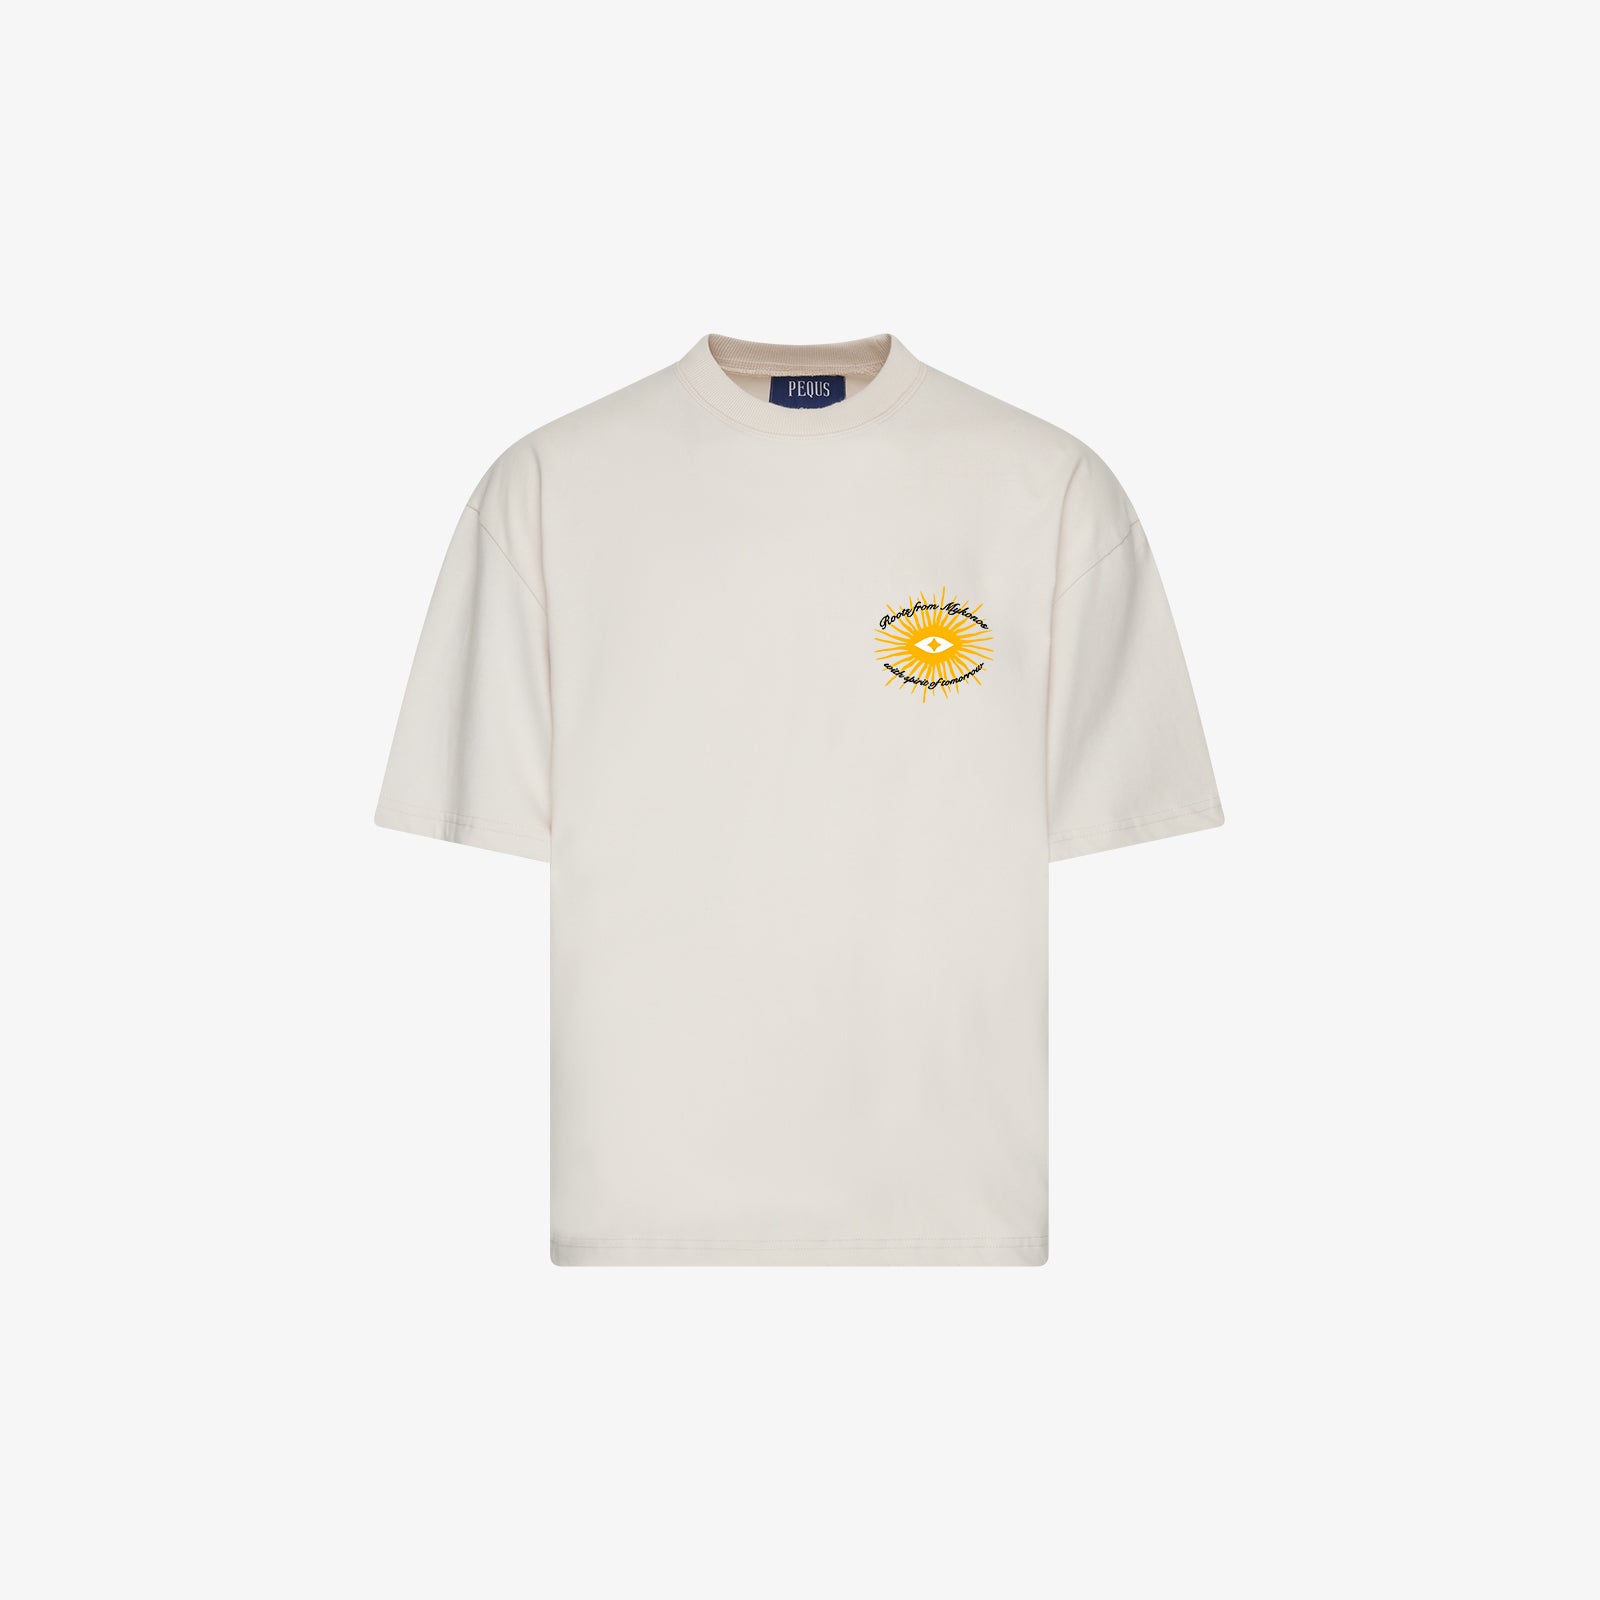 A Paradise Beach Club Graphic T-Shirt